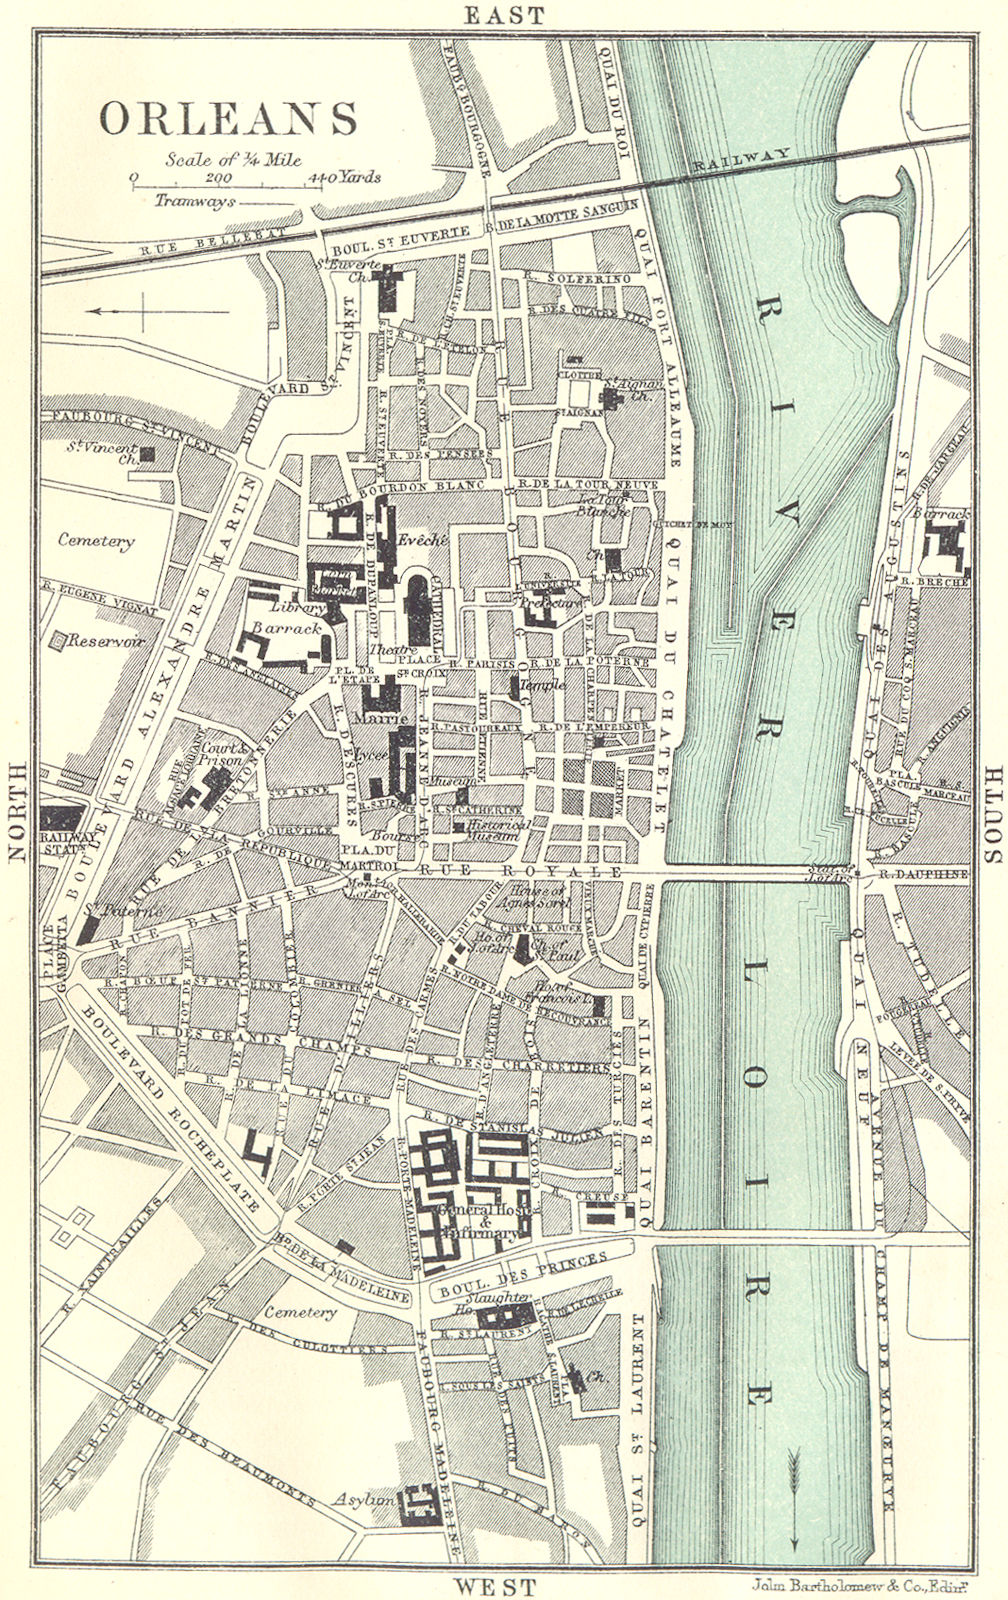 Associate Product ORLEANS town/city plan de la ville. Loiret 1914 old antique map chart